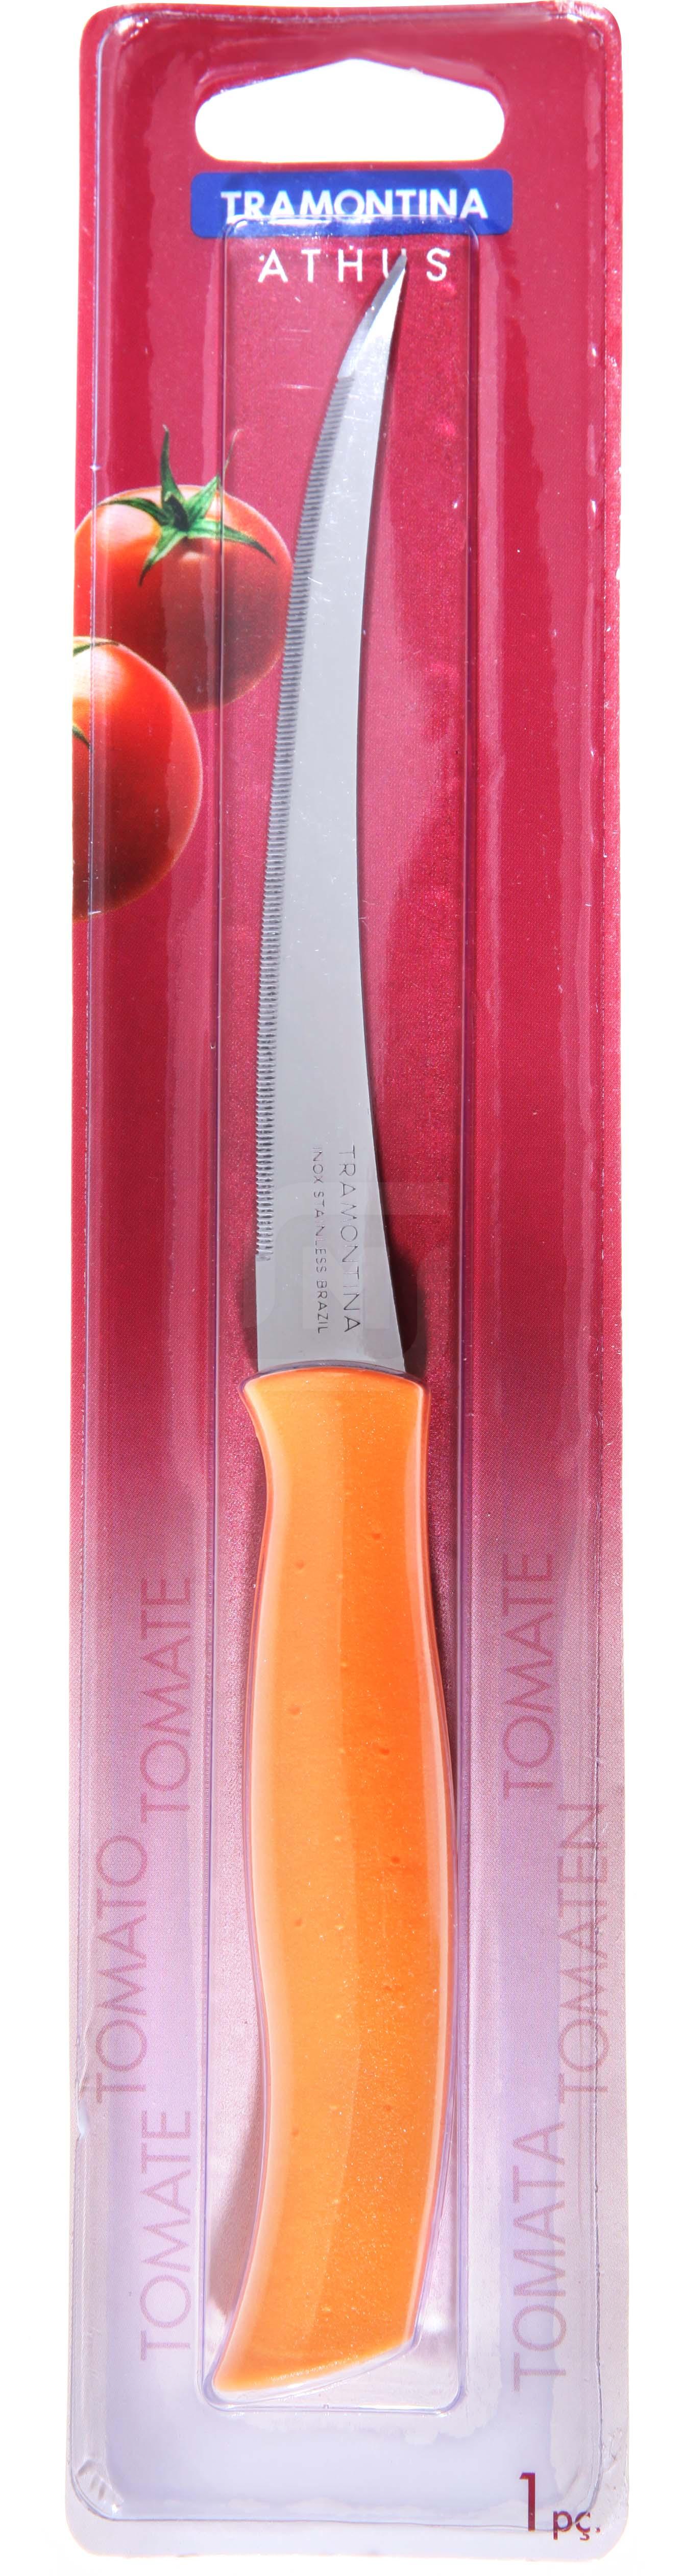 фото Нож для овощей tramontina athus 12,5 см в ассортименте